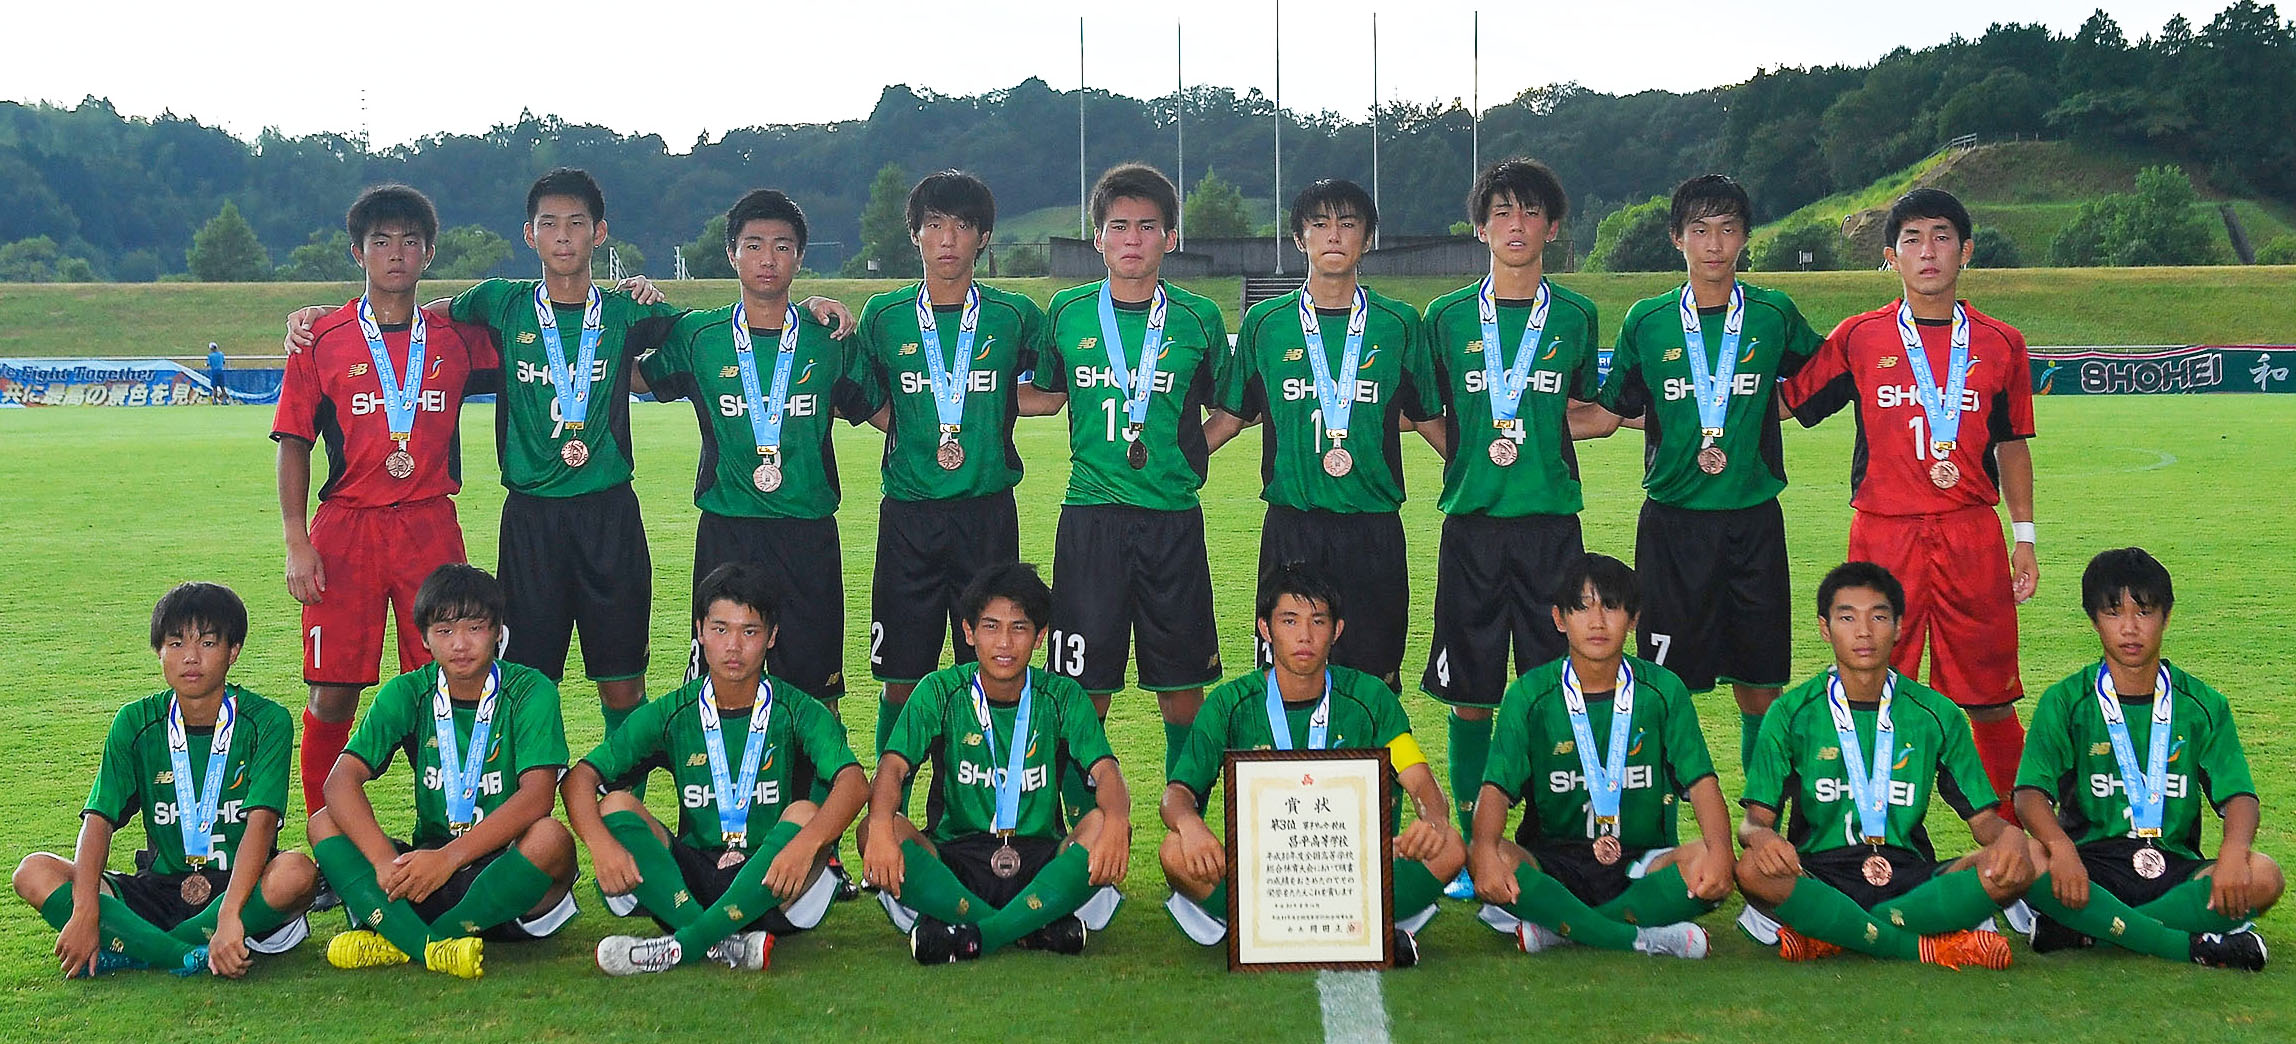 昌平高校サッカー部メンバー18出身チームと注目選手と10番